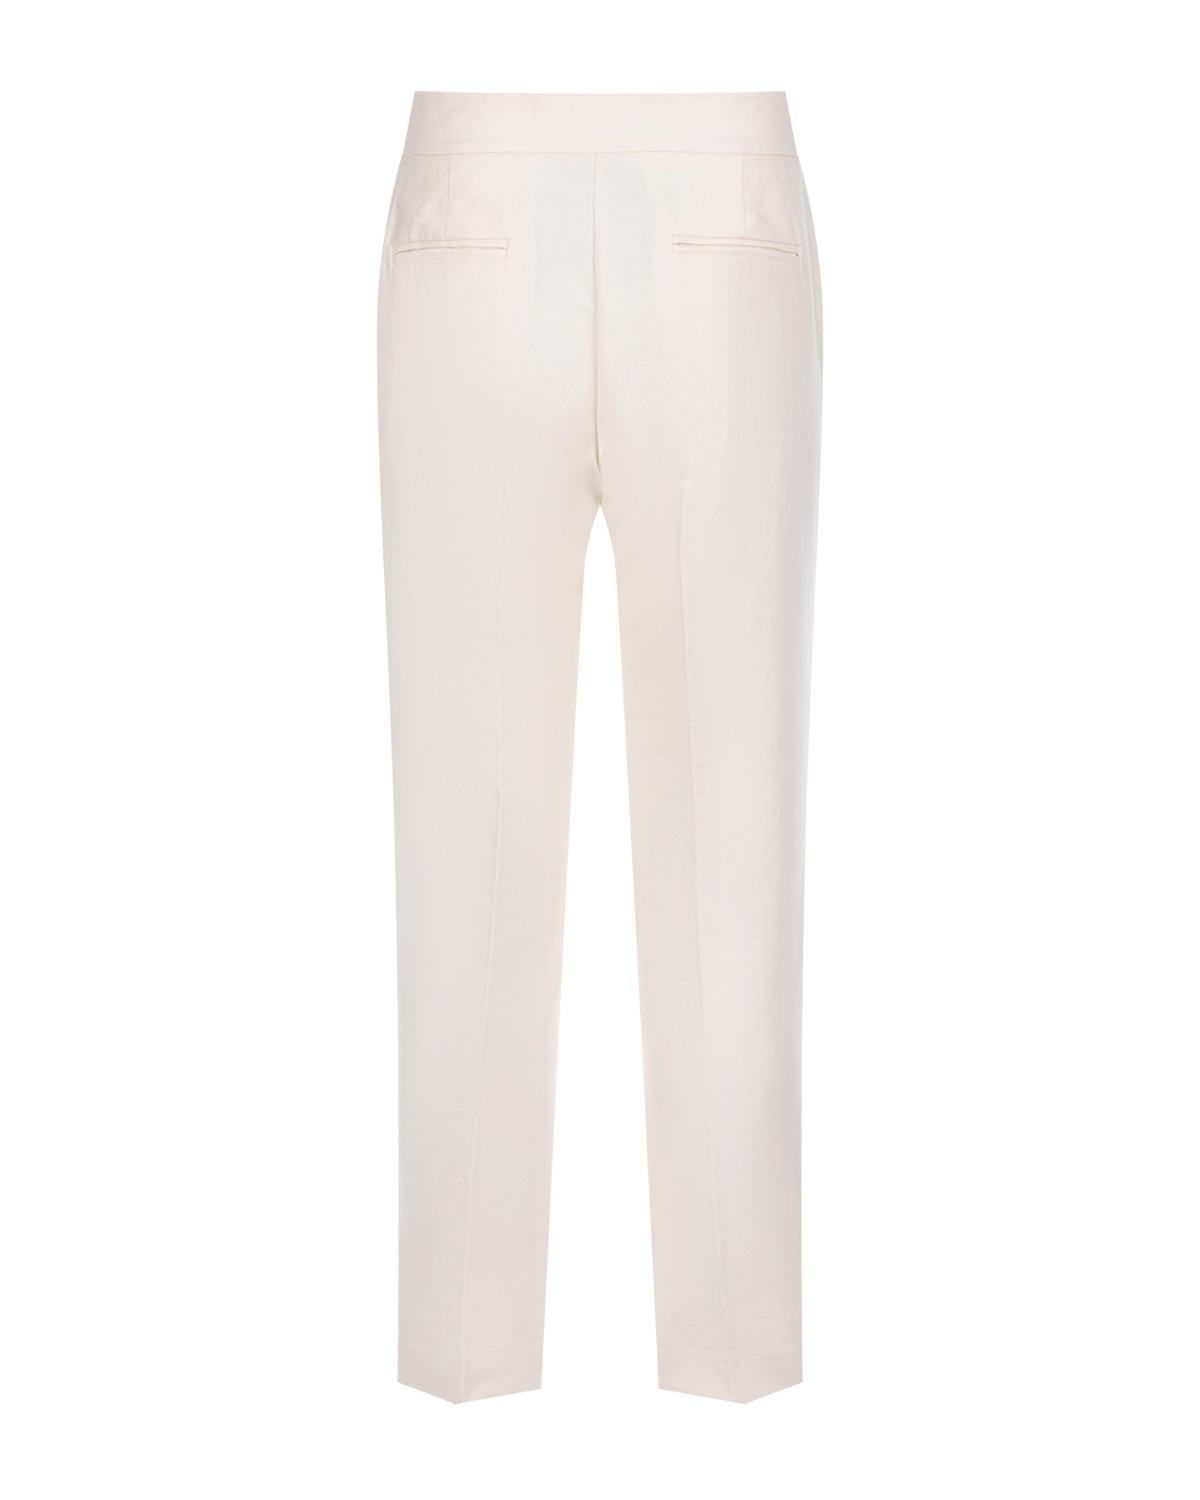 Бежевые брюки прямого кроя со стрелками TWINSET, размер 40, цвет бежевый - фото 5